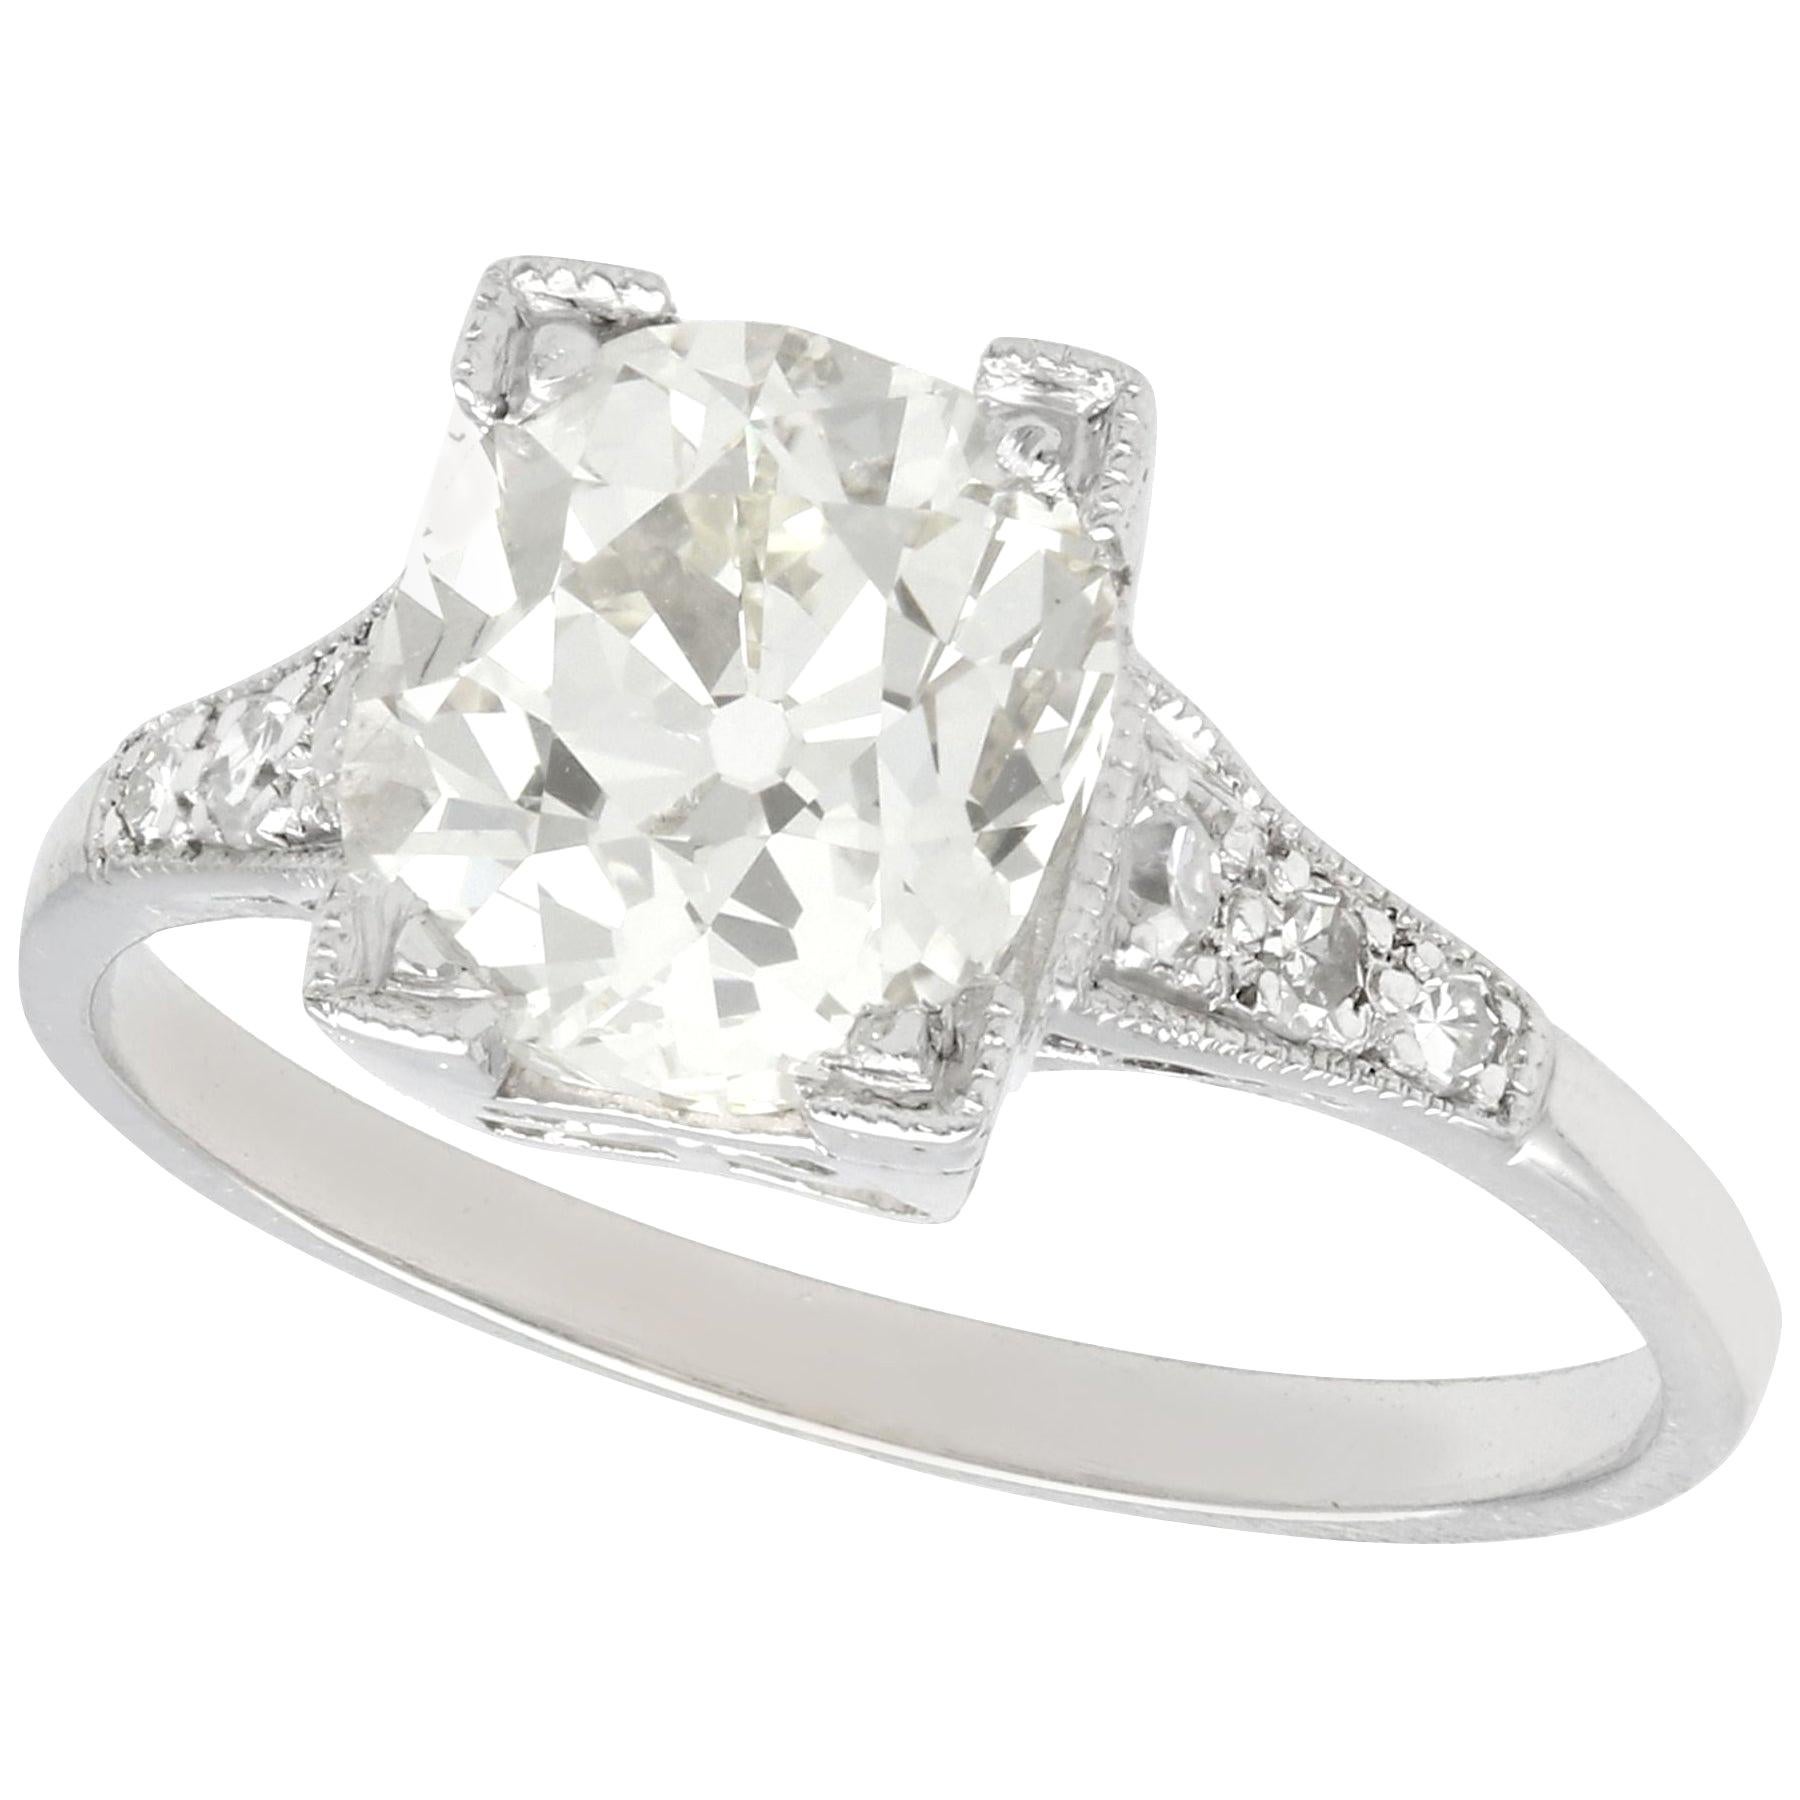 Antique 2.45 Carat Diamond and Platinum Solitaire Engagement Ring, Circa 1930